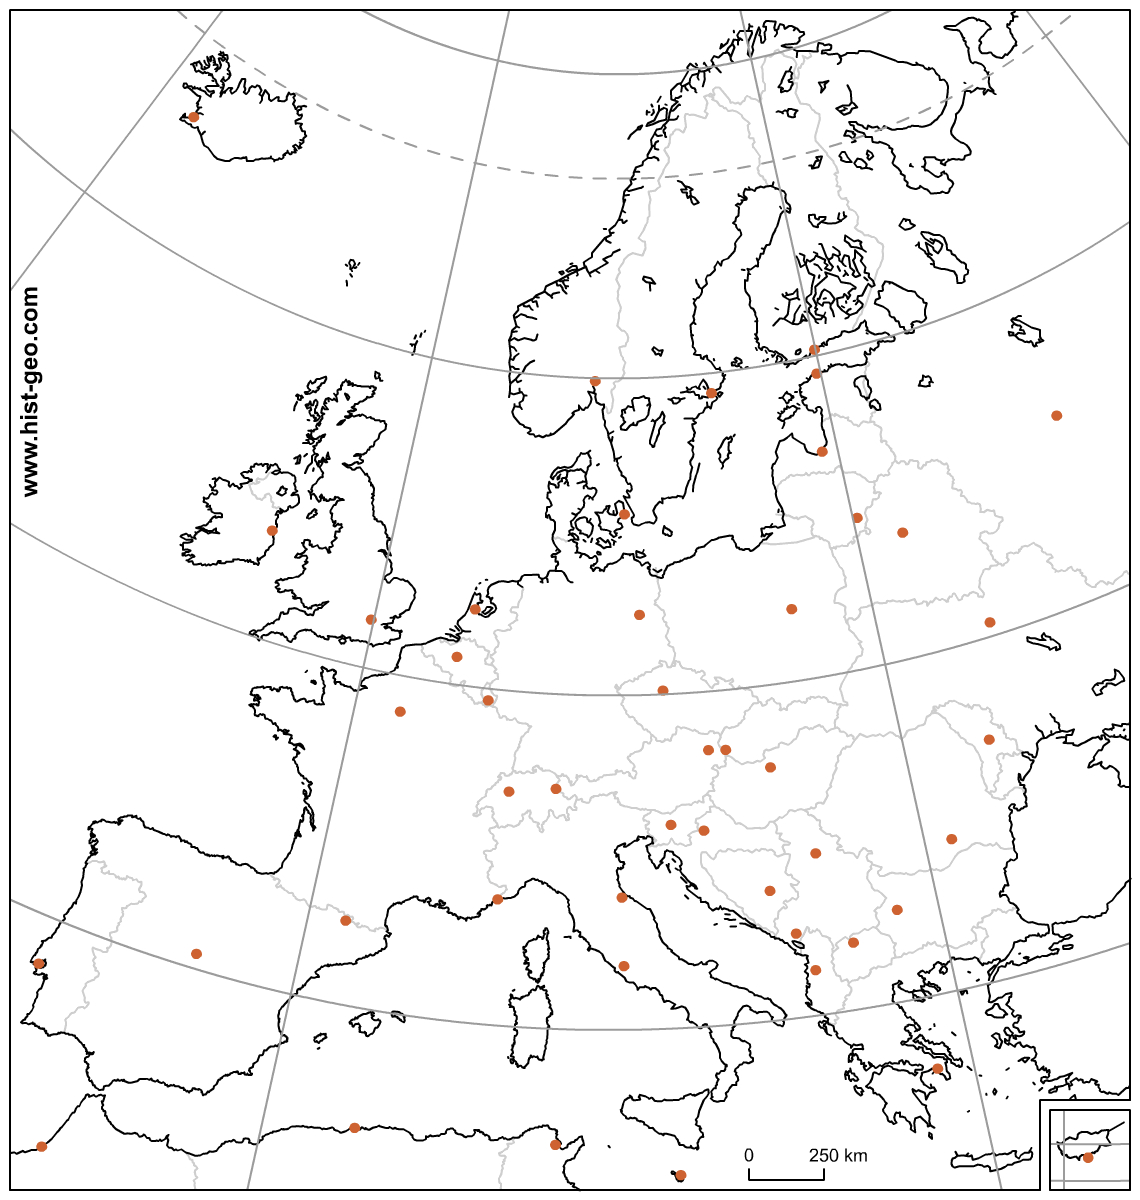 Carte Muette Des Pays Et Capitales D'europe (Ue) Avec intérieur Carte De L Europe Capitales